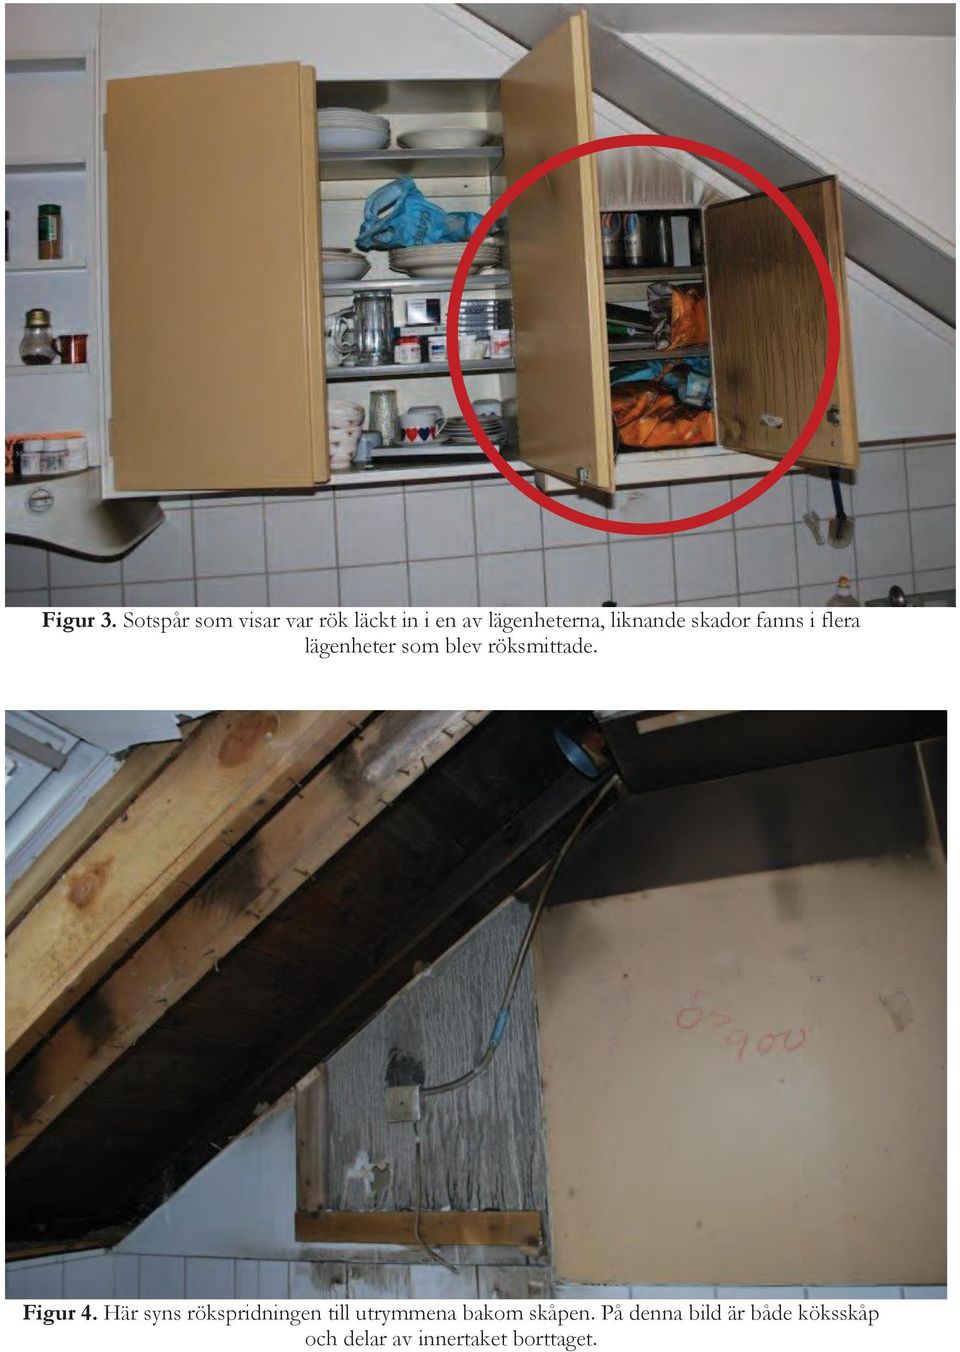 liknande skador fanns i flera lägenheter som blev röksmittade.